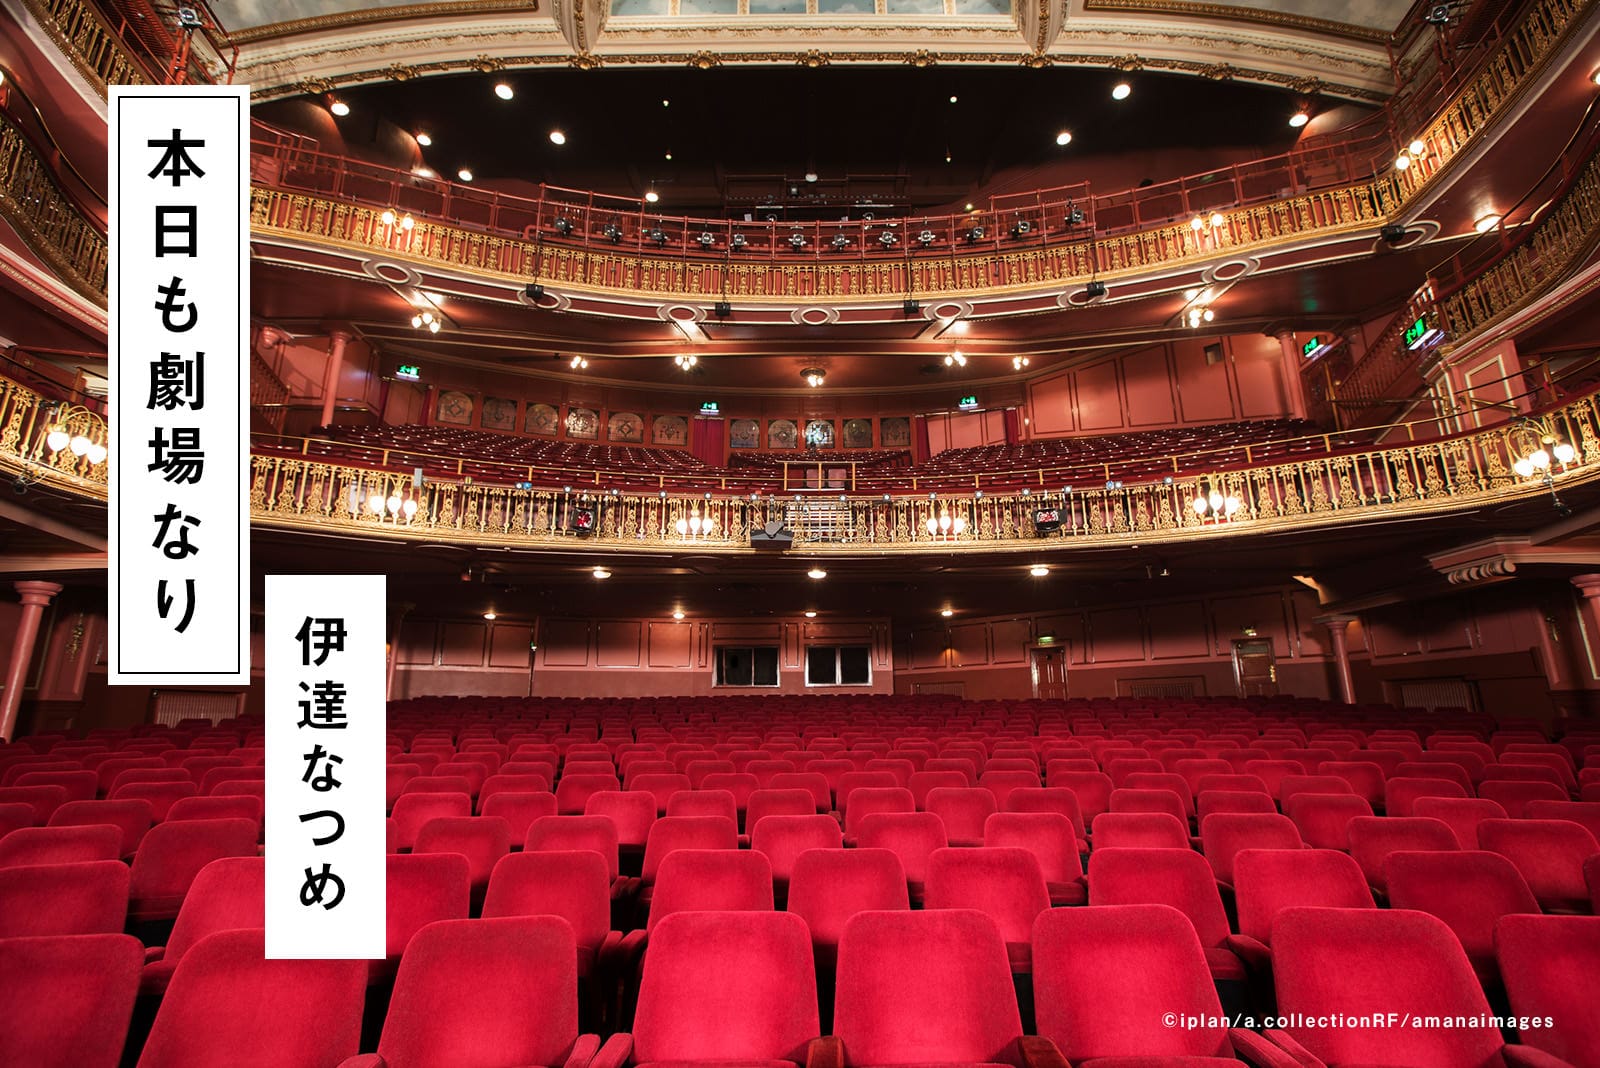 #16 ブロードウェイの歌姫オハラとハリウッドスター・ワタナベ夢の共演＠東京